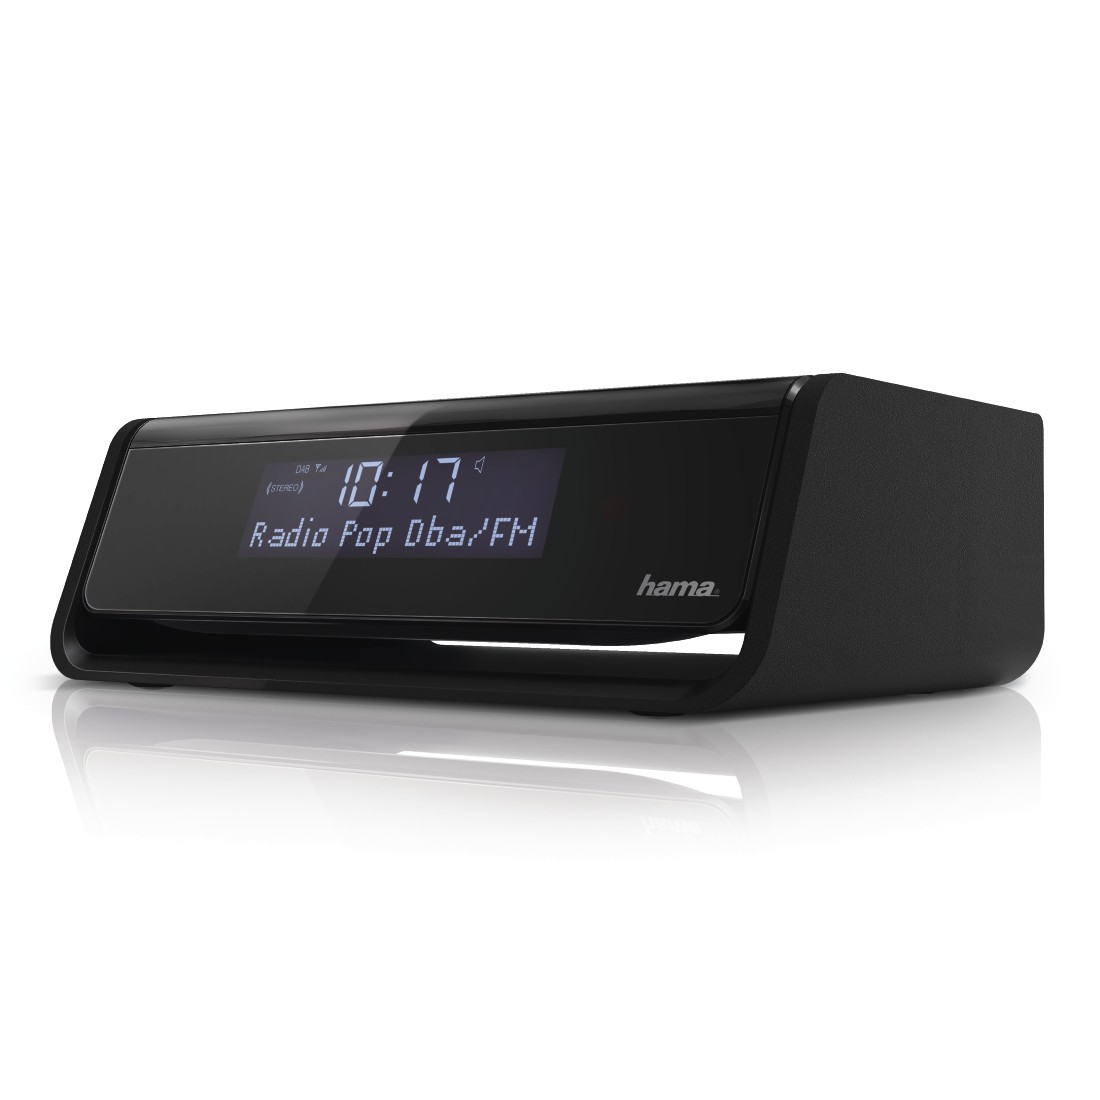 Hama Digitaler Radiowecker DR30 schwarz UKW/DAB/DAB+, zwei Weckzeiten, Snooze-Funktion, Sleep-Timer, Kopfhöreranschluss, Lichtsensor zur Displaybeleuchtung, Uhrenradio